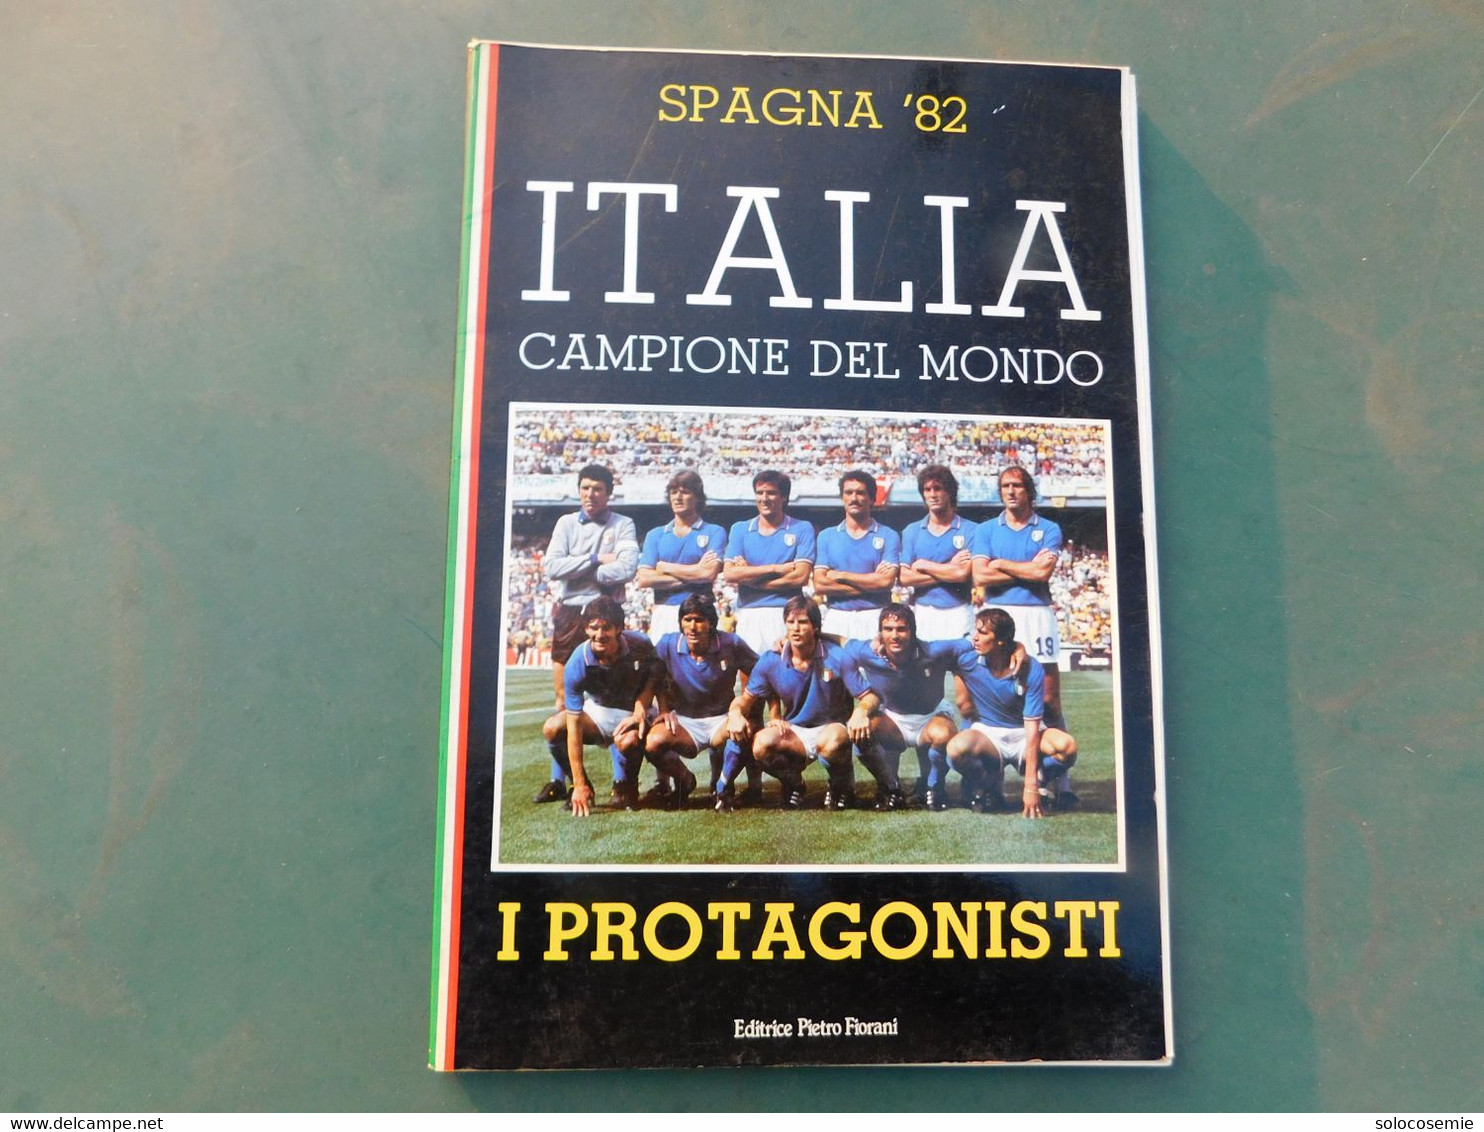 Spagna '82 - ITALIA CAMPIONE DEL MONDO  -I Protagonisti, Editrice Fiorani - A Identificar